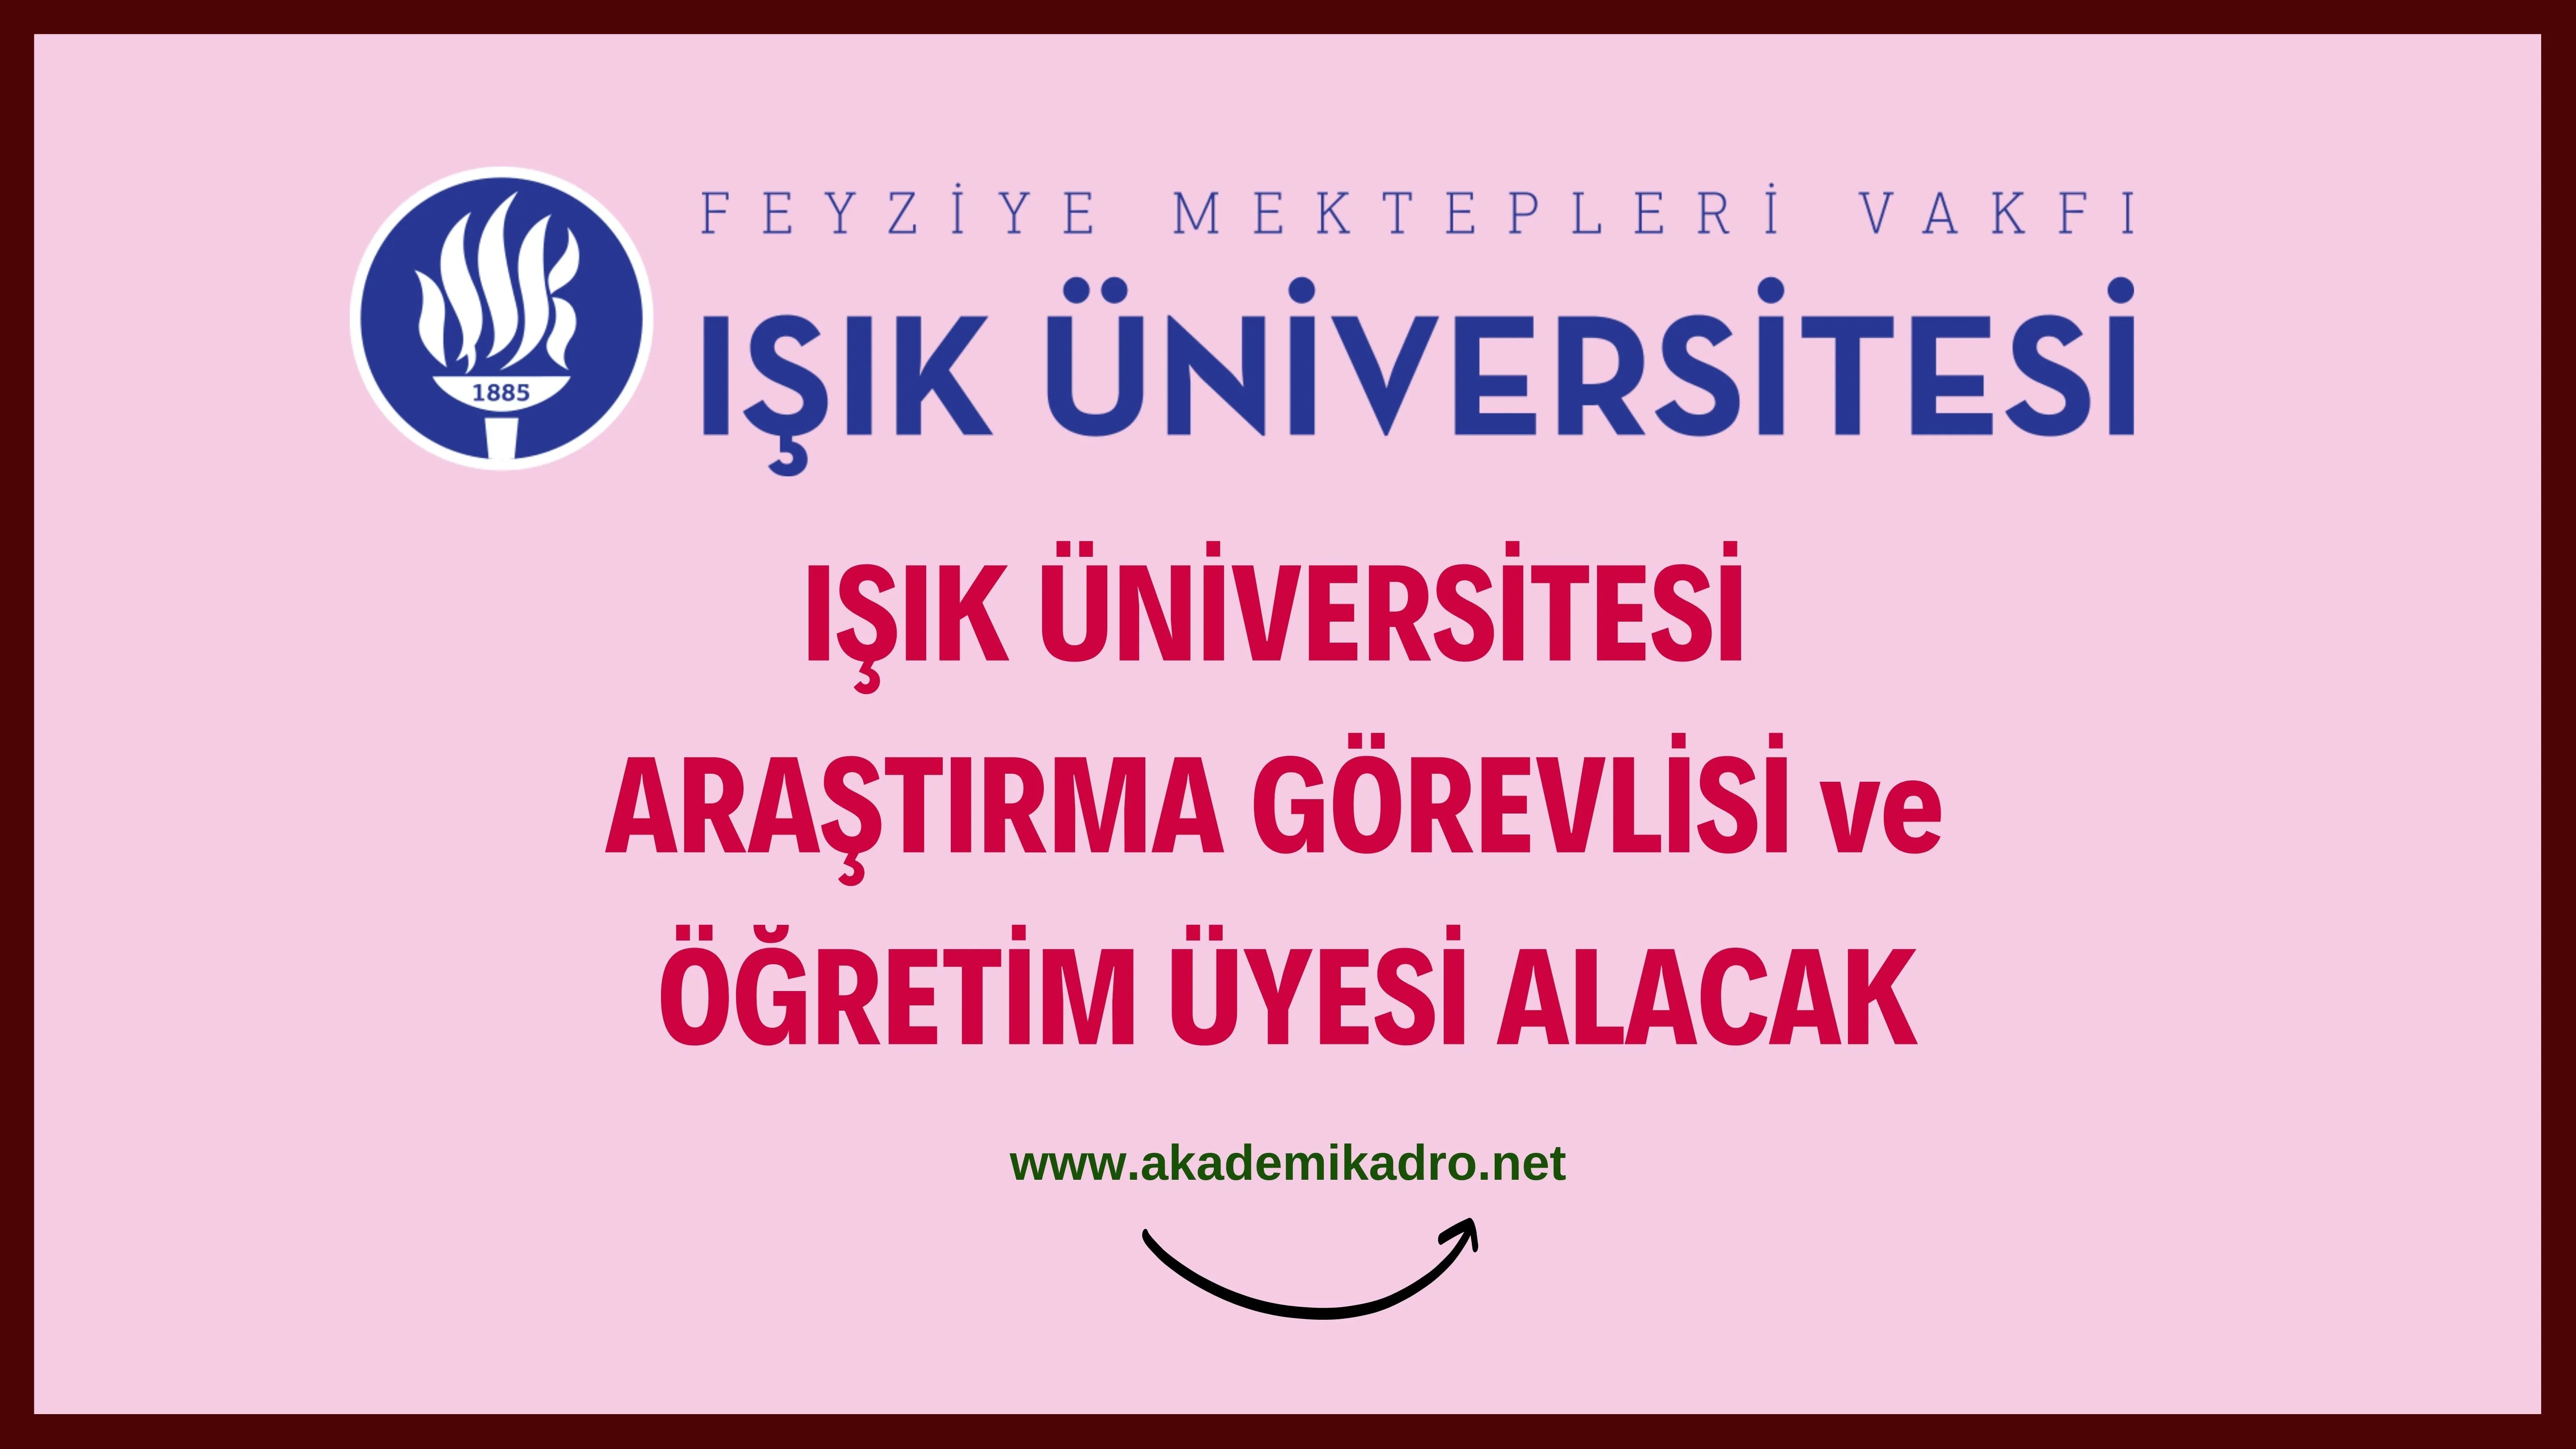 Işık Üniversitesi Araştırma görevlisi ve 3 Öğretim üyesi alacak. 